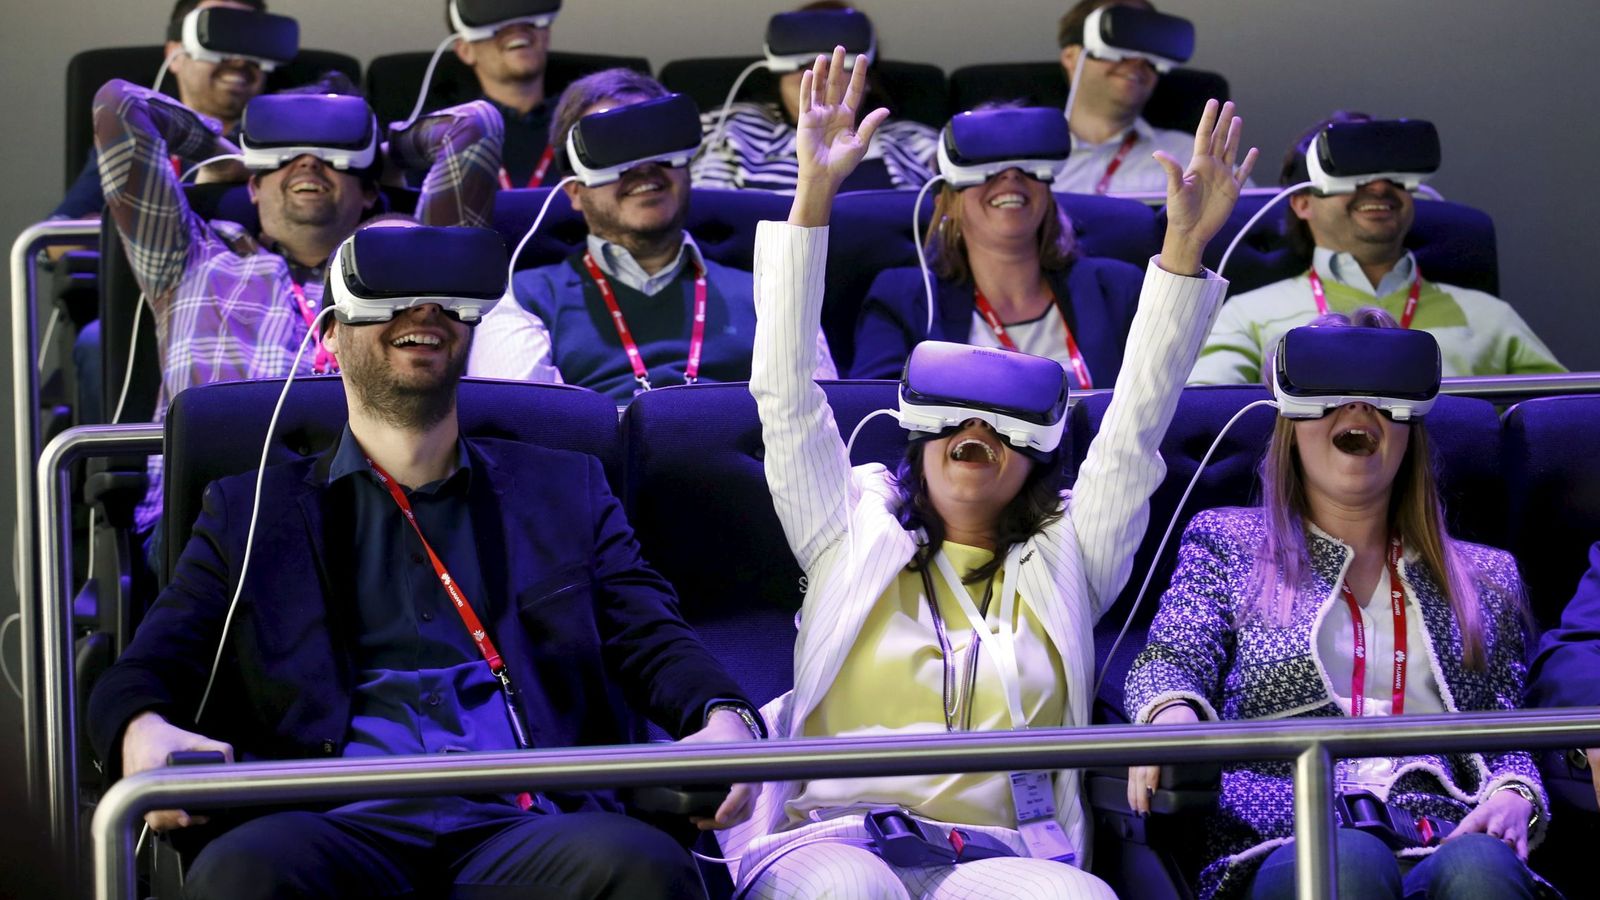 Foto: Samsung ha montado una atracción virtual en el Mobile World Congress. (Reuters)